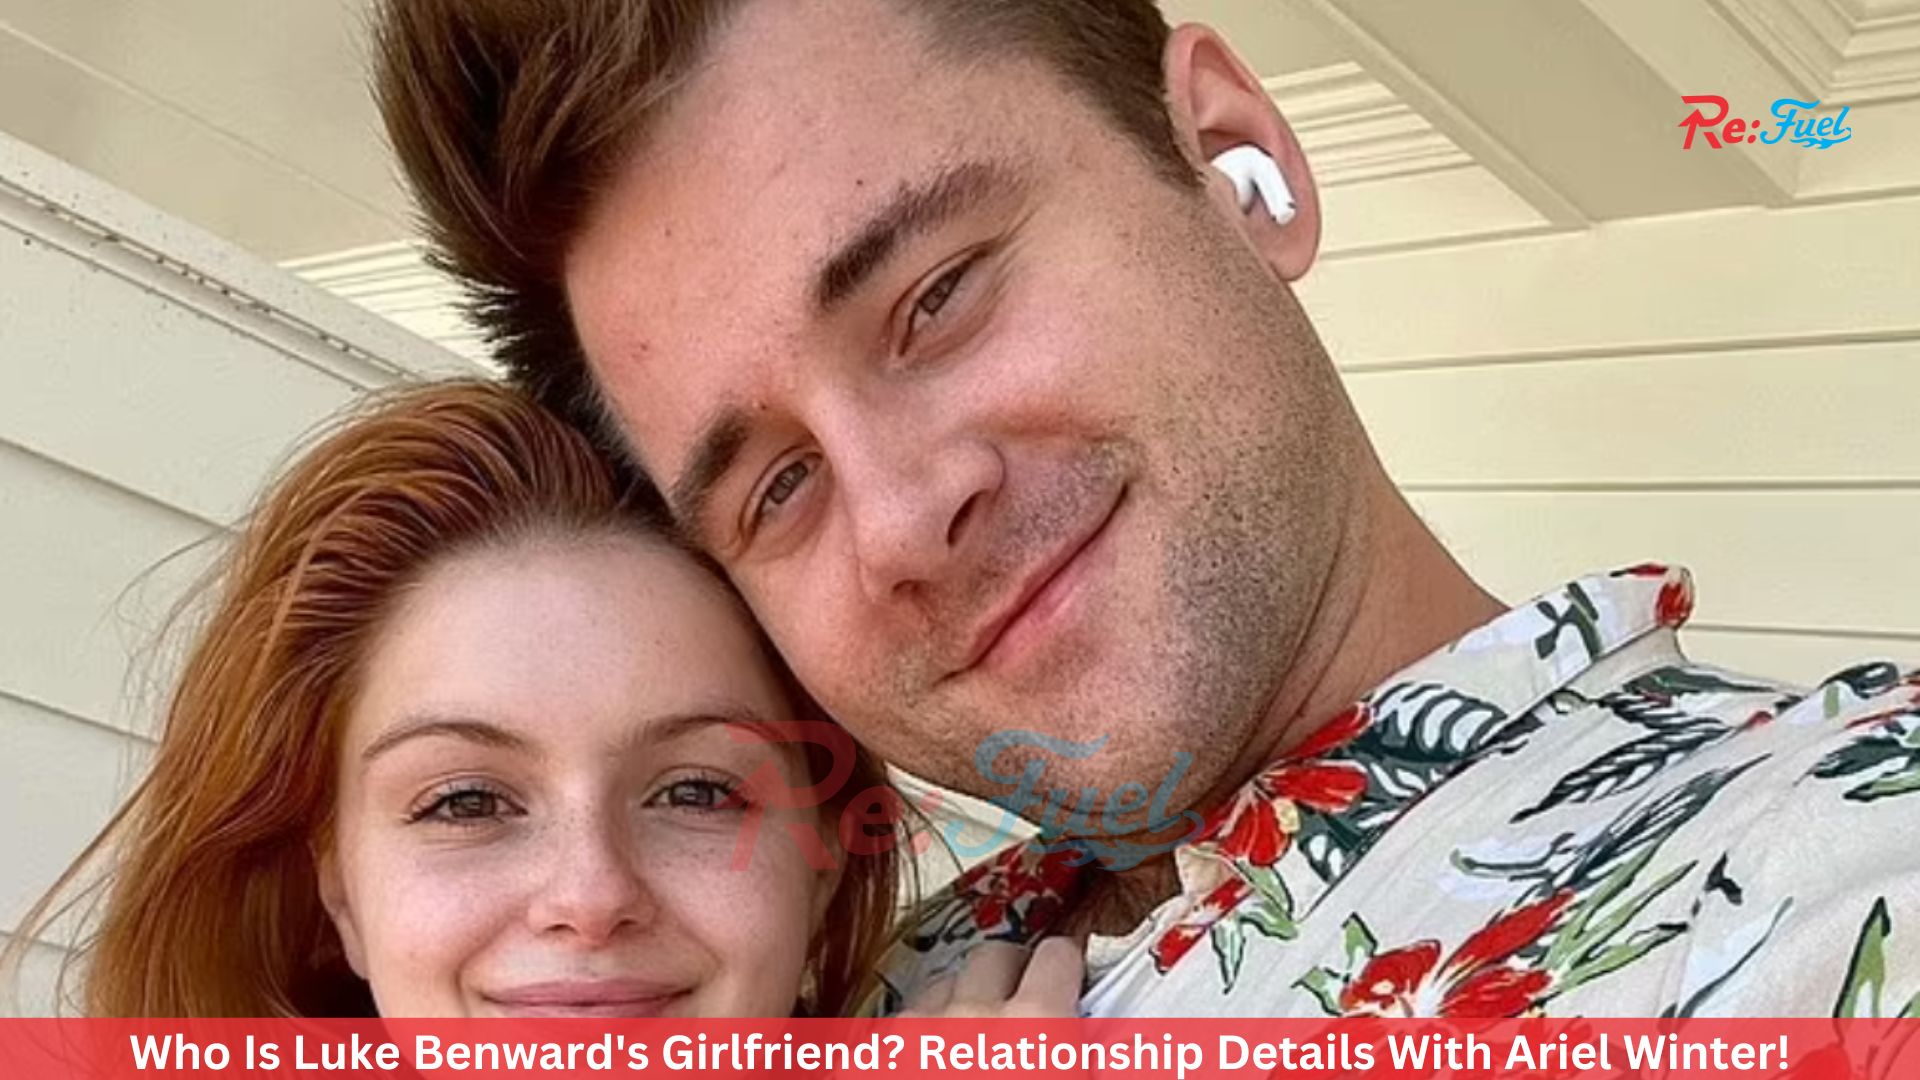 Who Is Luke Benward's Girlfriend? Relationship Details With Ariel Winter!